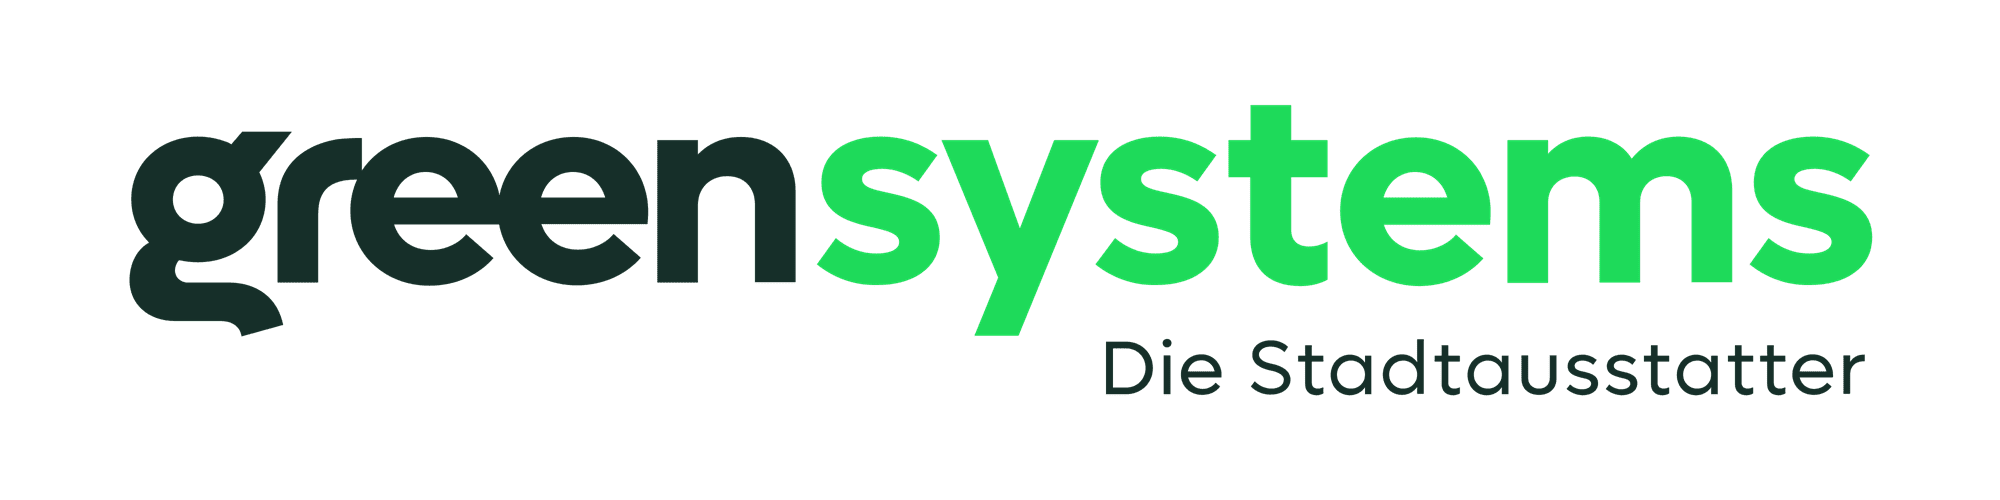 greensystems - Die Stadtausstatter